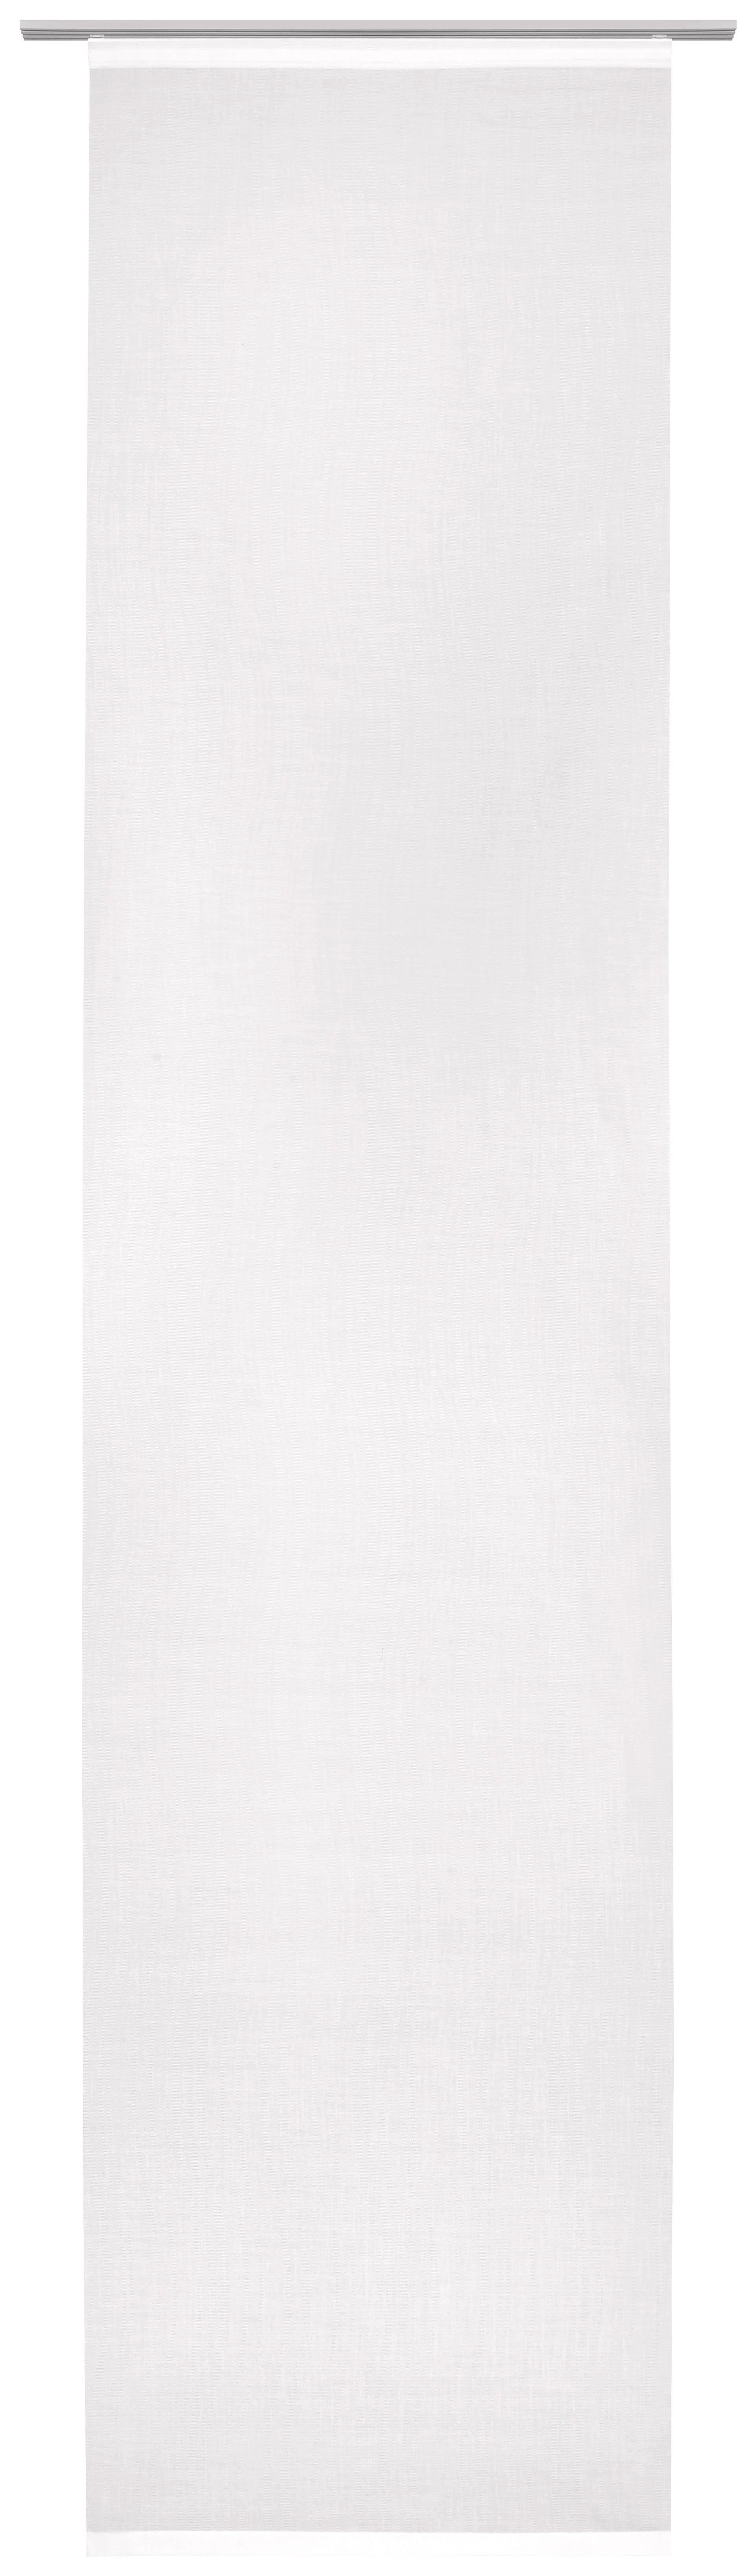 FLÄCHENVORHANG in Weiß transparent  - Weiß, Design, Textil (60/255cm) - Novel